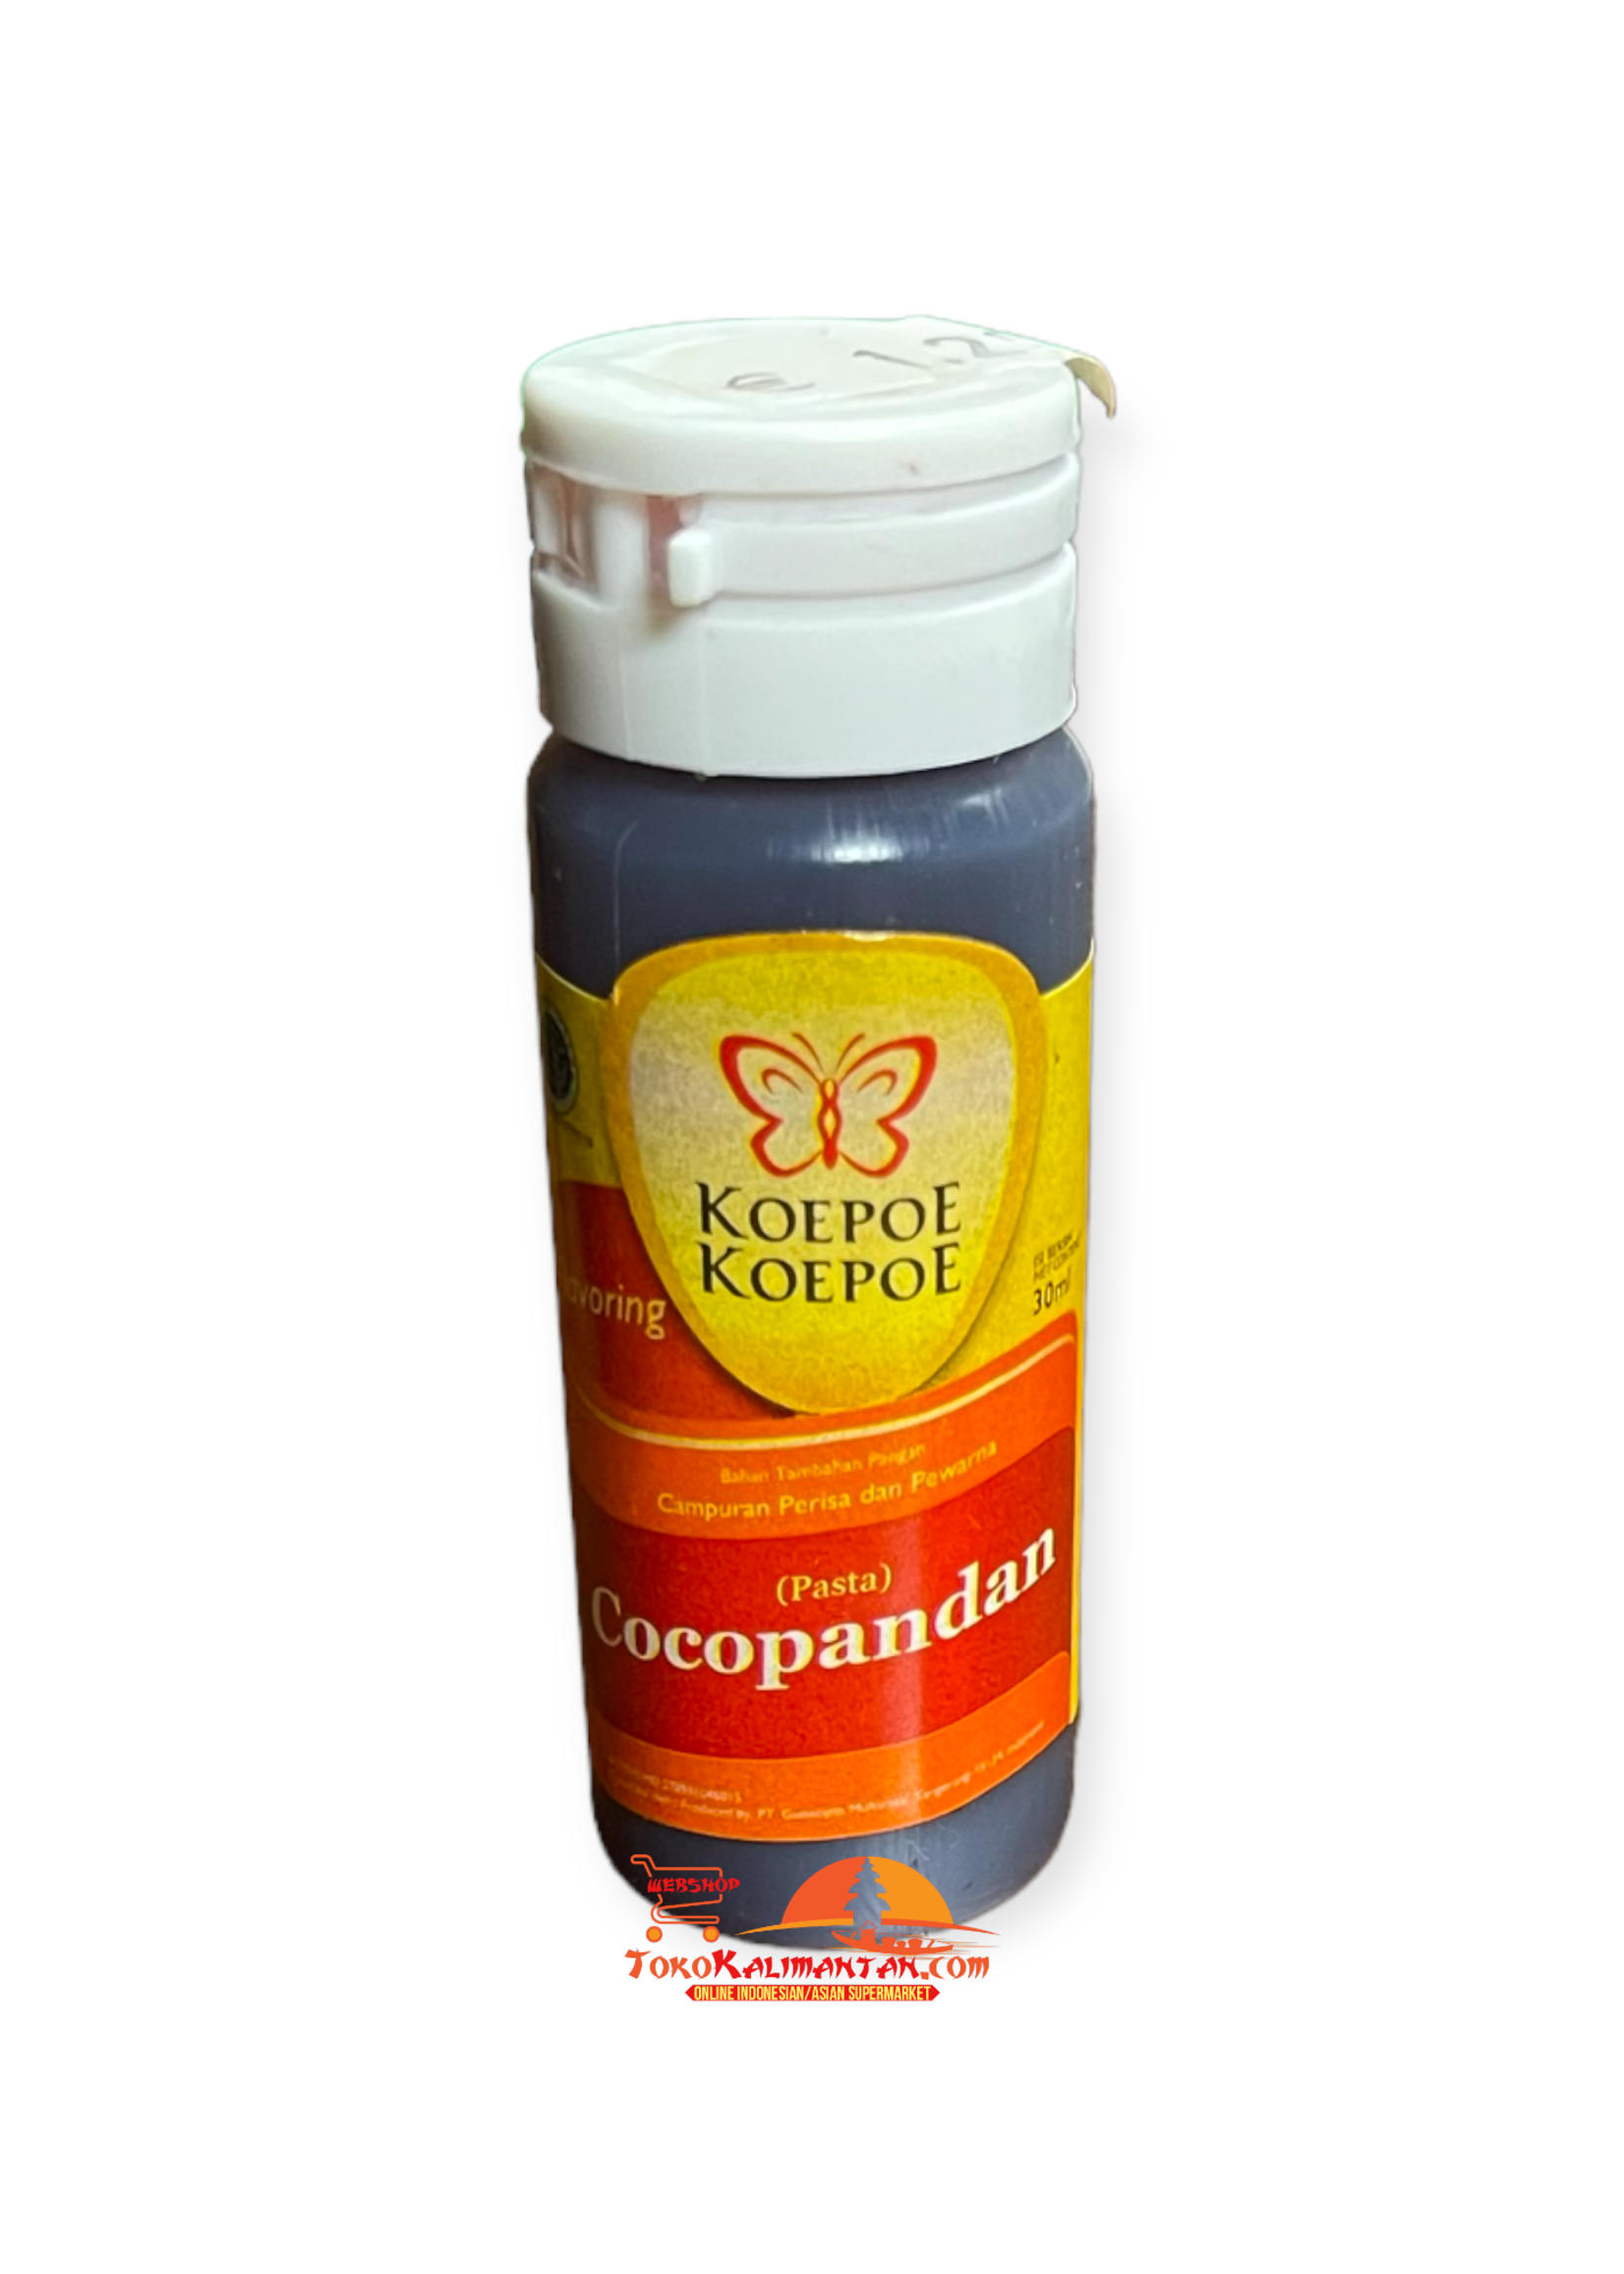 Koepoe Koepoe-Koepoe Cocopandan